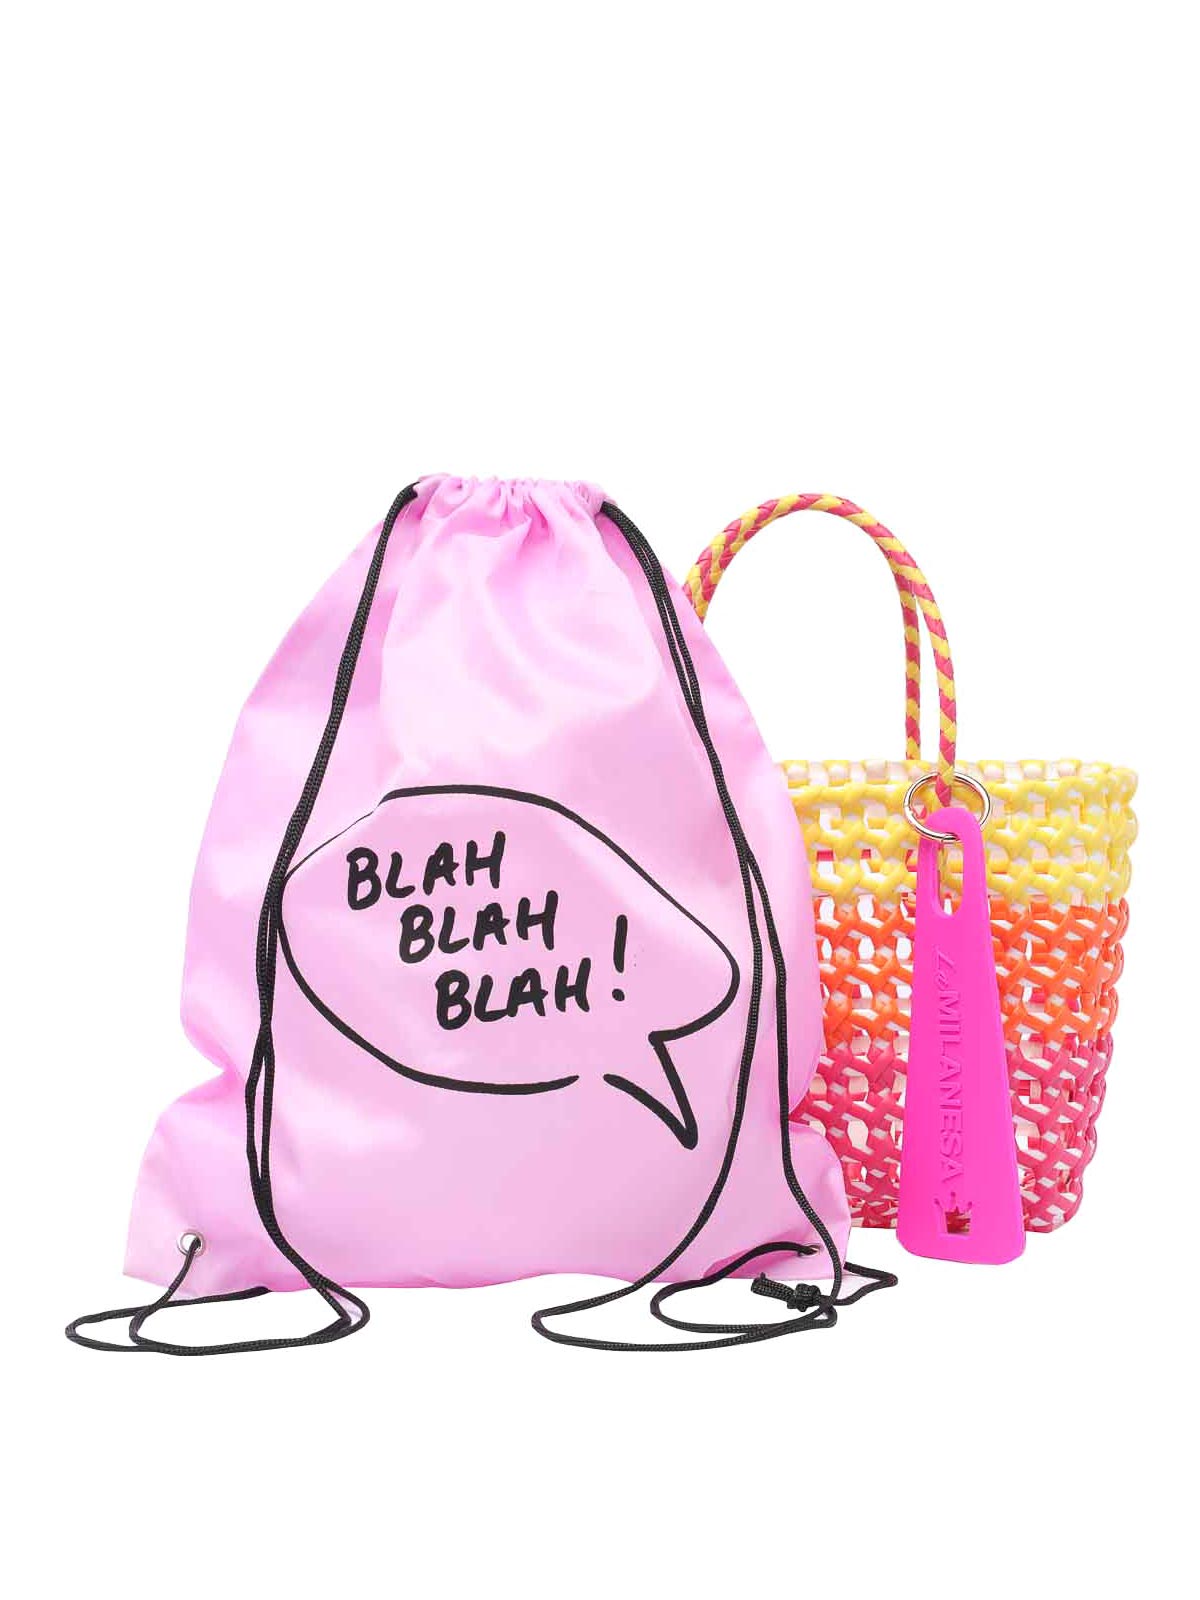 Shop La Milanesa Small Negroni Hand Bag In Multicolour